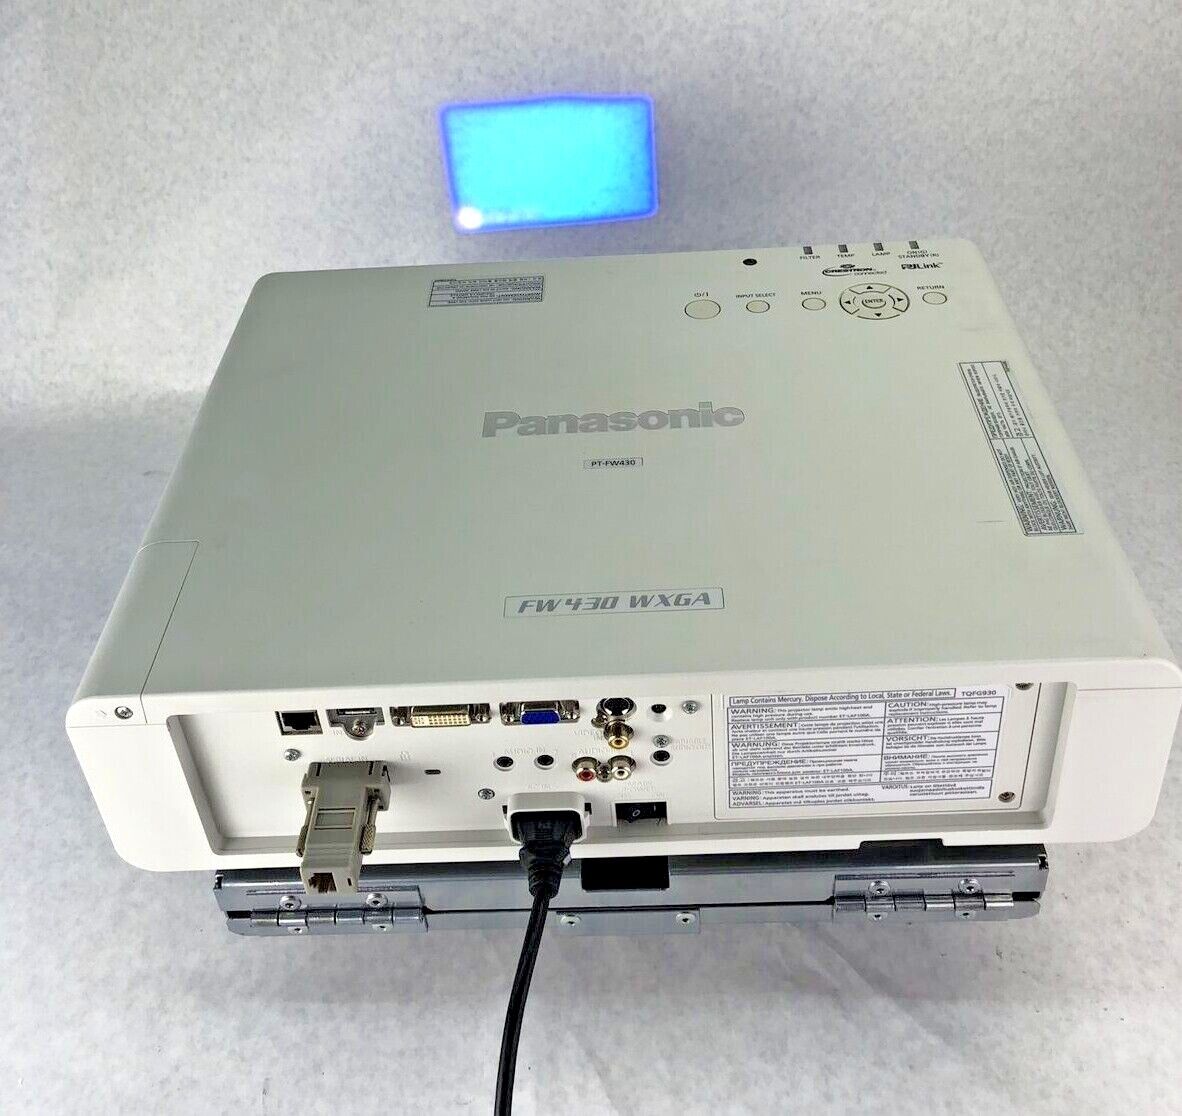 Panasonic PT-FW430U WXGA LCD Projector 2279 Lamp Hours & Peerless Mount Bundle